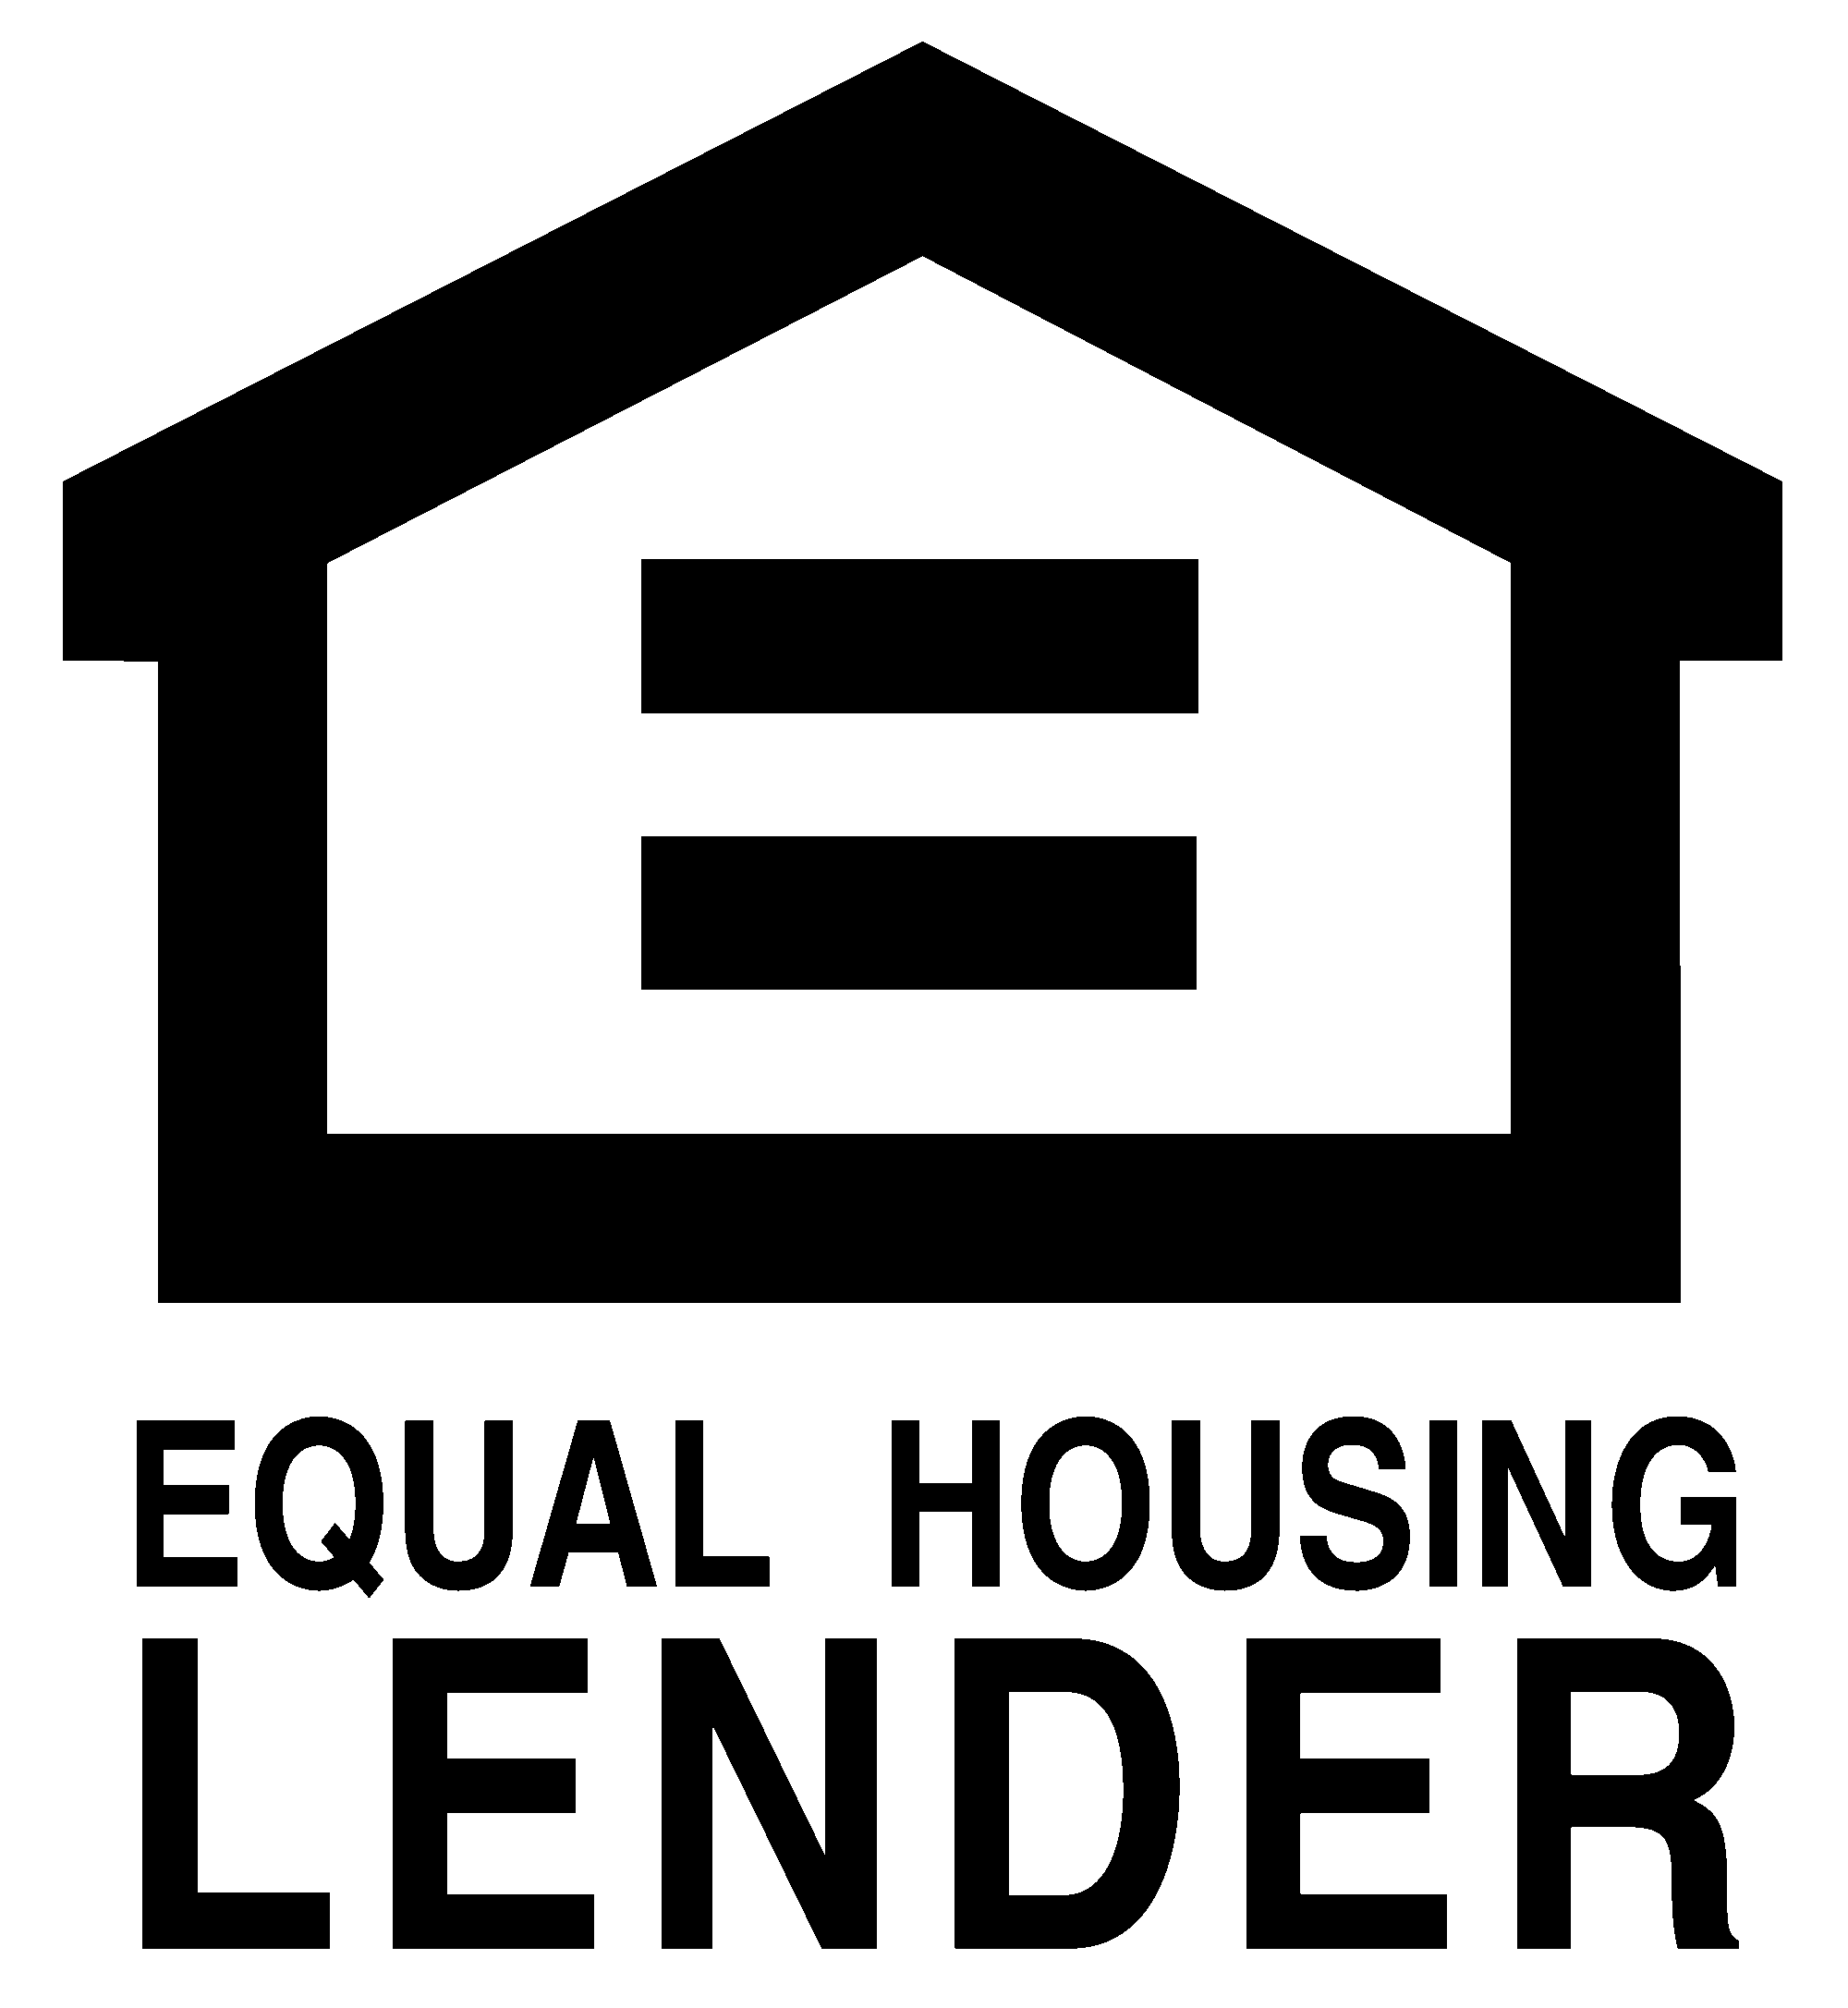 Equal Hosing Lender Icon